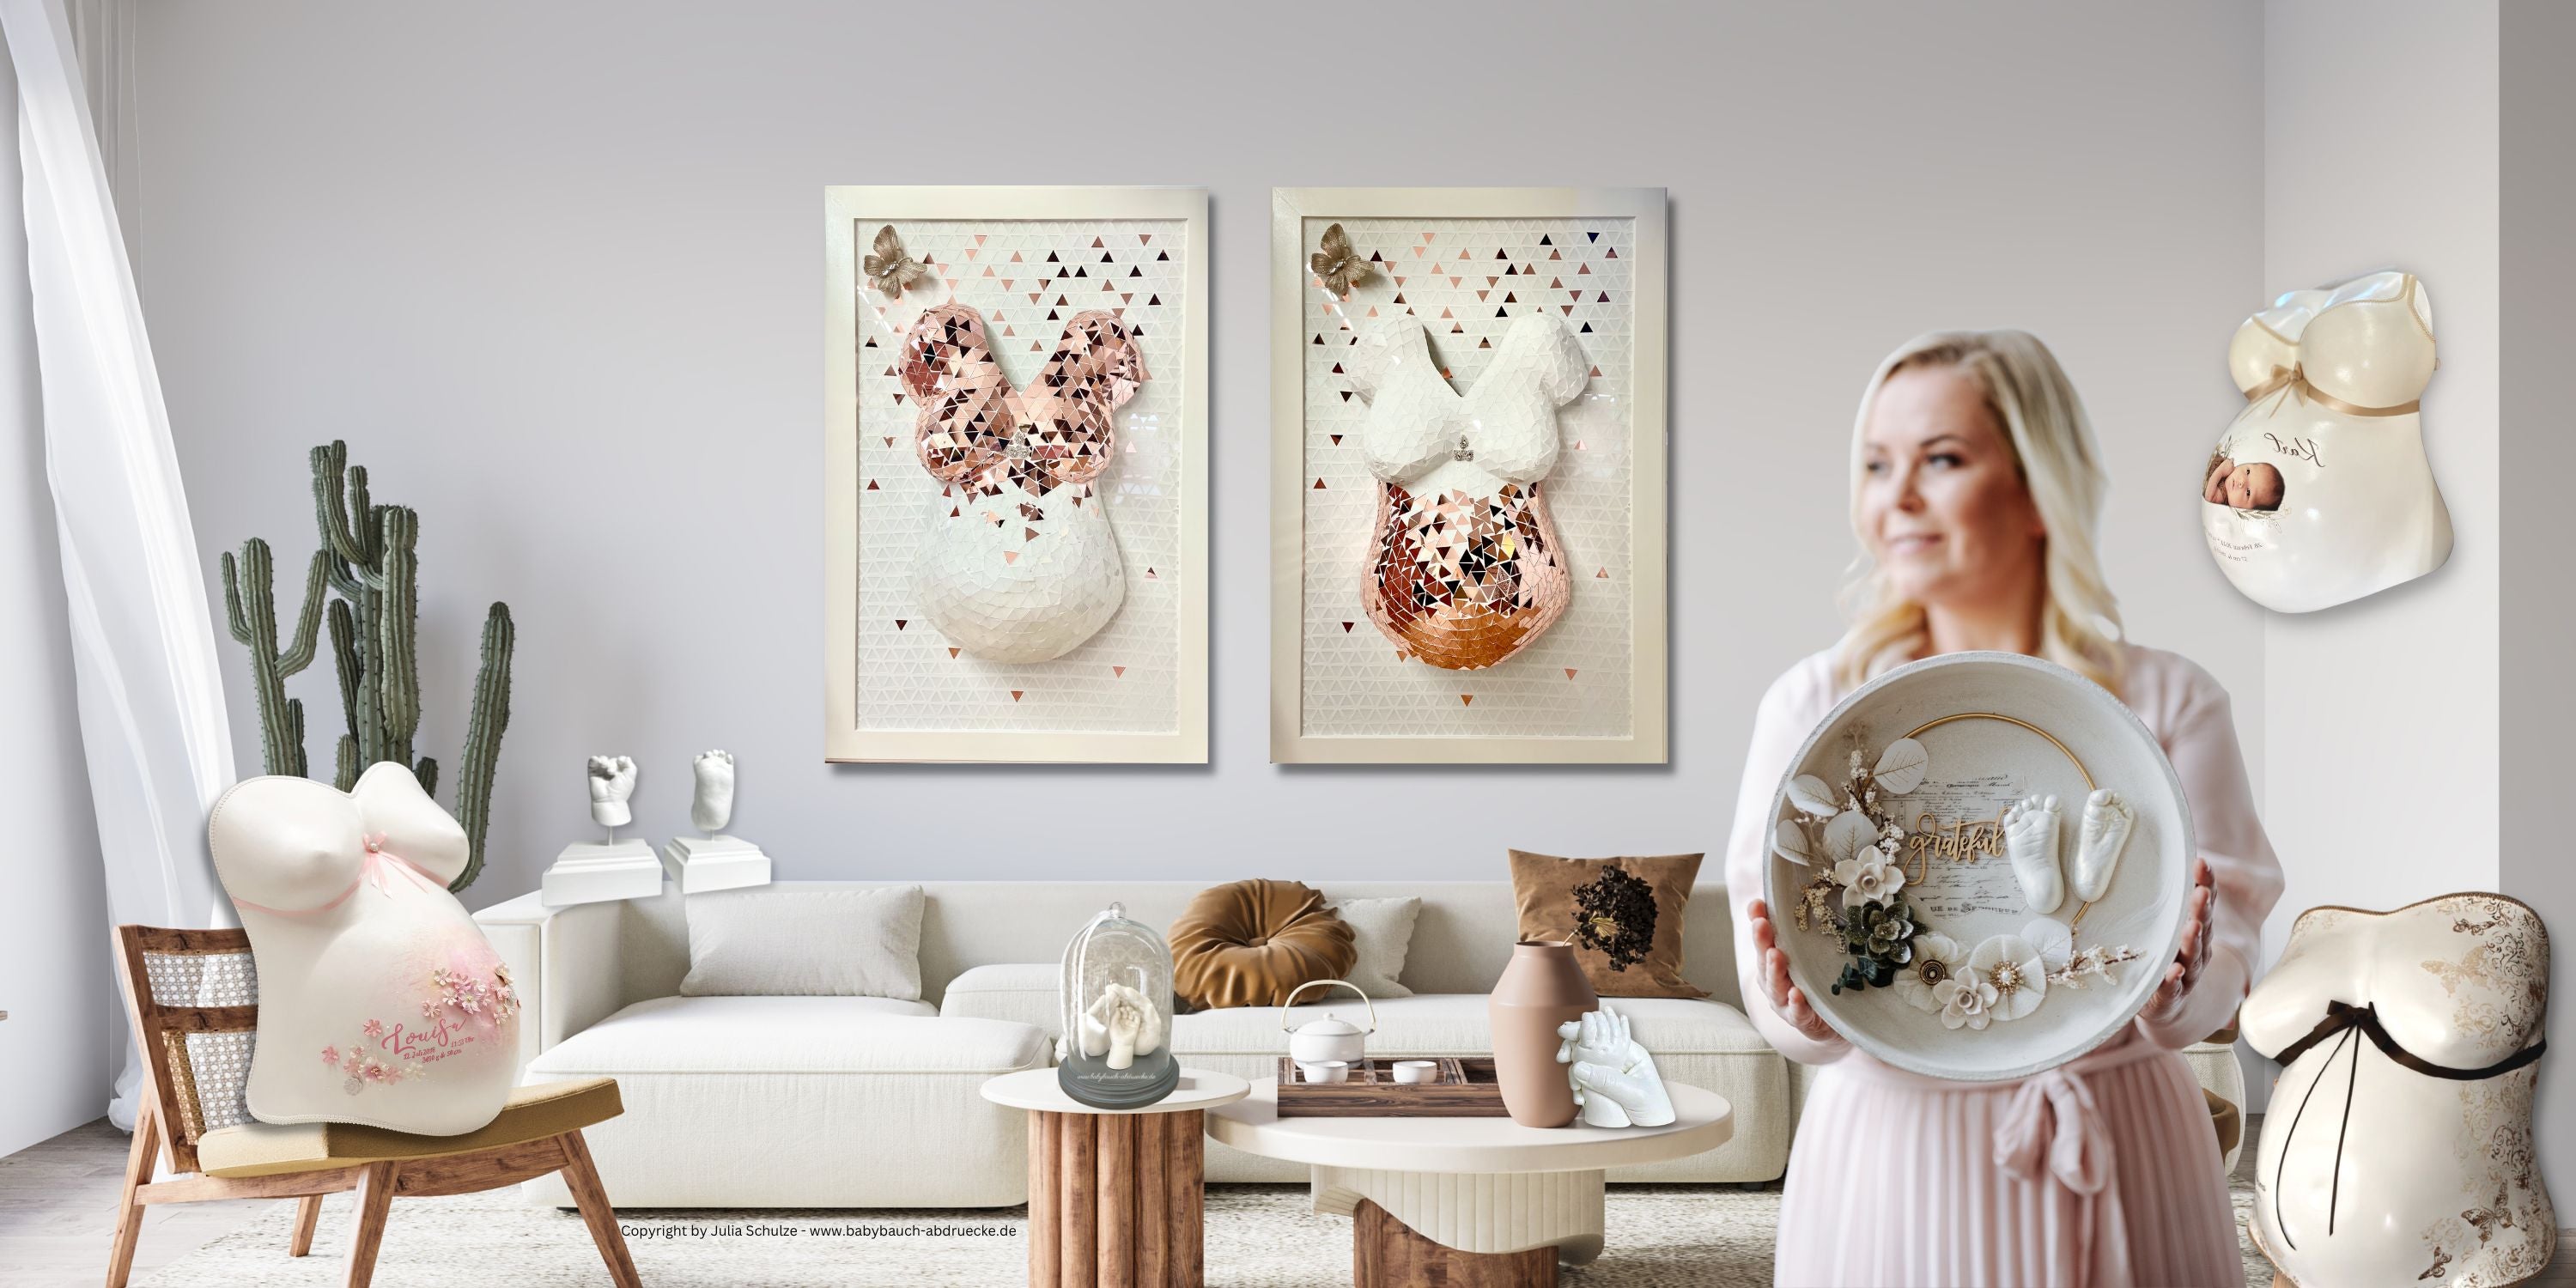 Dein Babybauch als Gipsabdruck hochwertig veredelt und gestaltet von der Künstlerin Julia Schulze vom Atelier Body-pArts aus Erfurt, Thüringen welche sich seit 15 Jahren auf Gipsabdrücke von Baby 3D Hand & Fuss und Babybäuche spezialisiert hat.